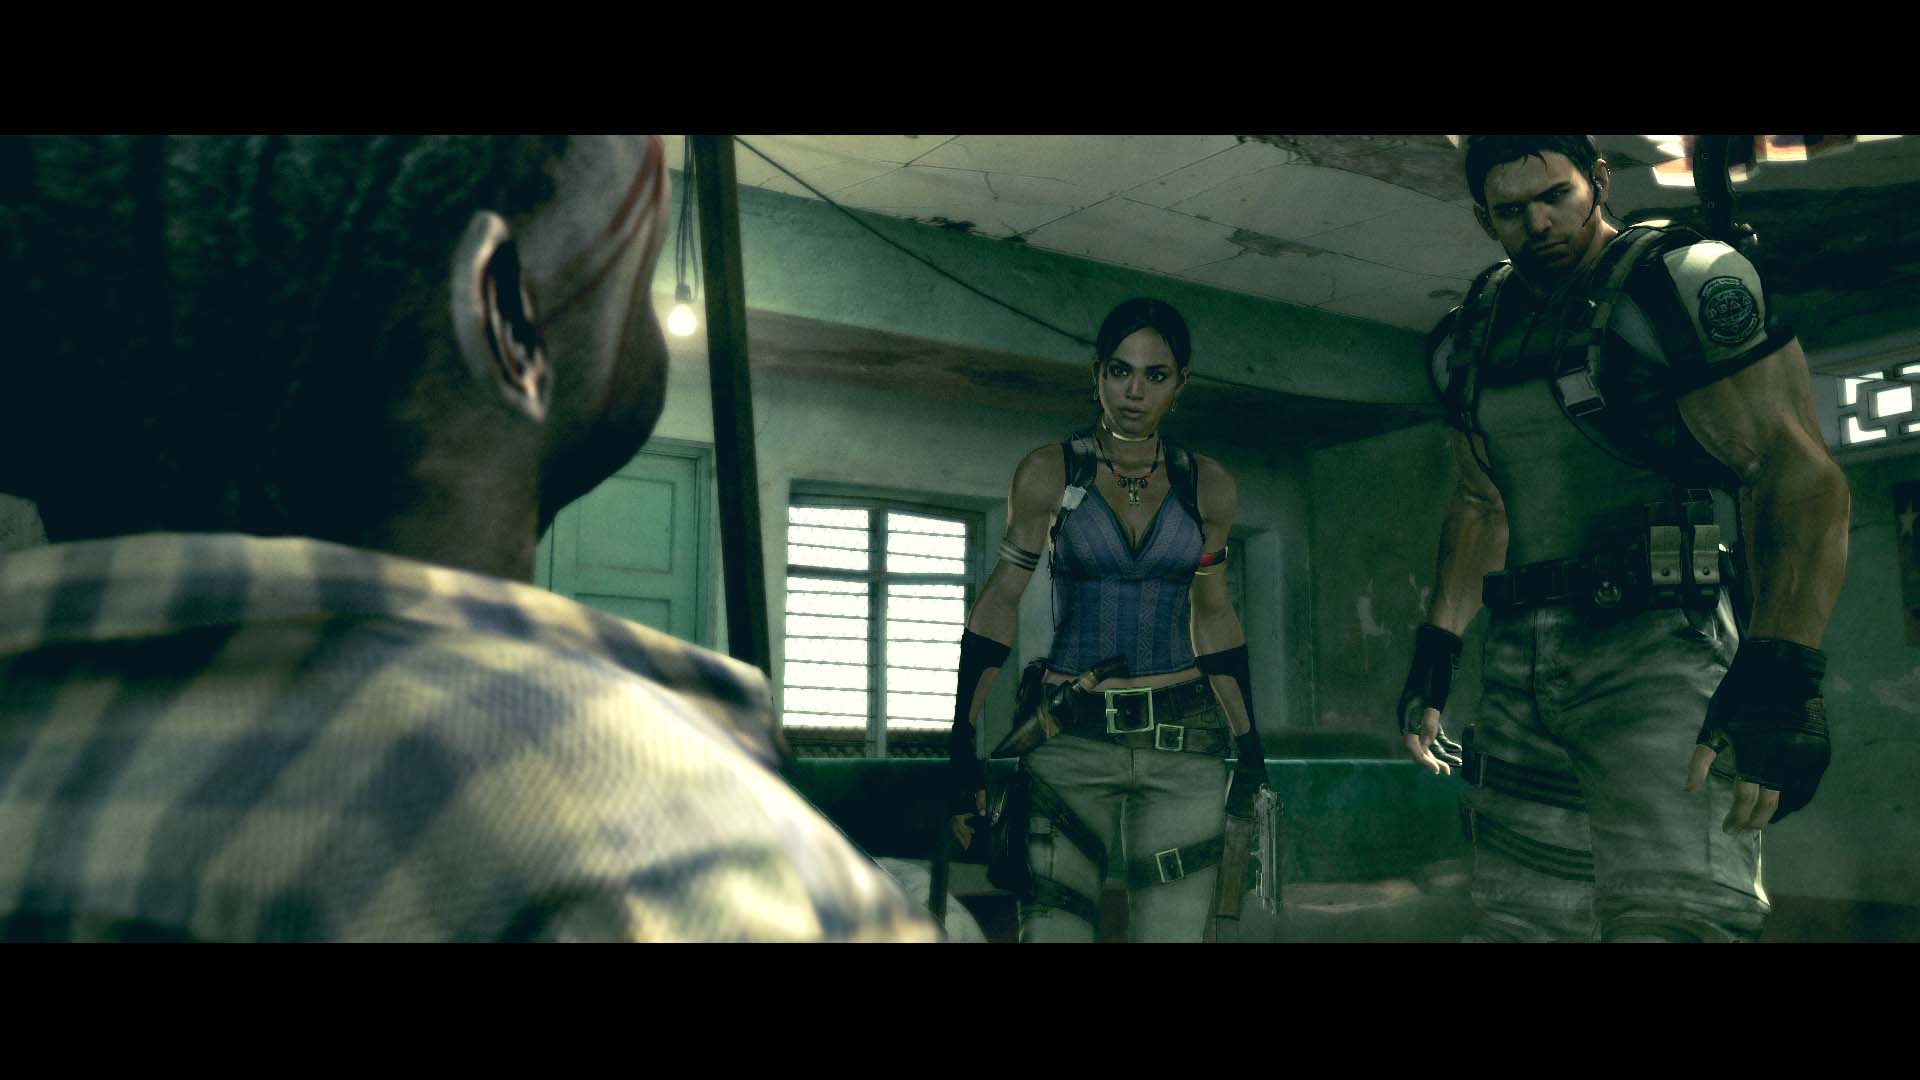 Resident Evil 5 ganha data de lançamento para PlayStation 4 e Xbox One